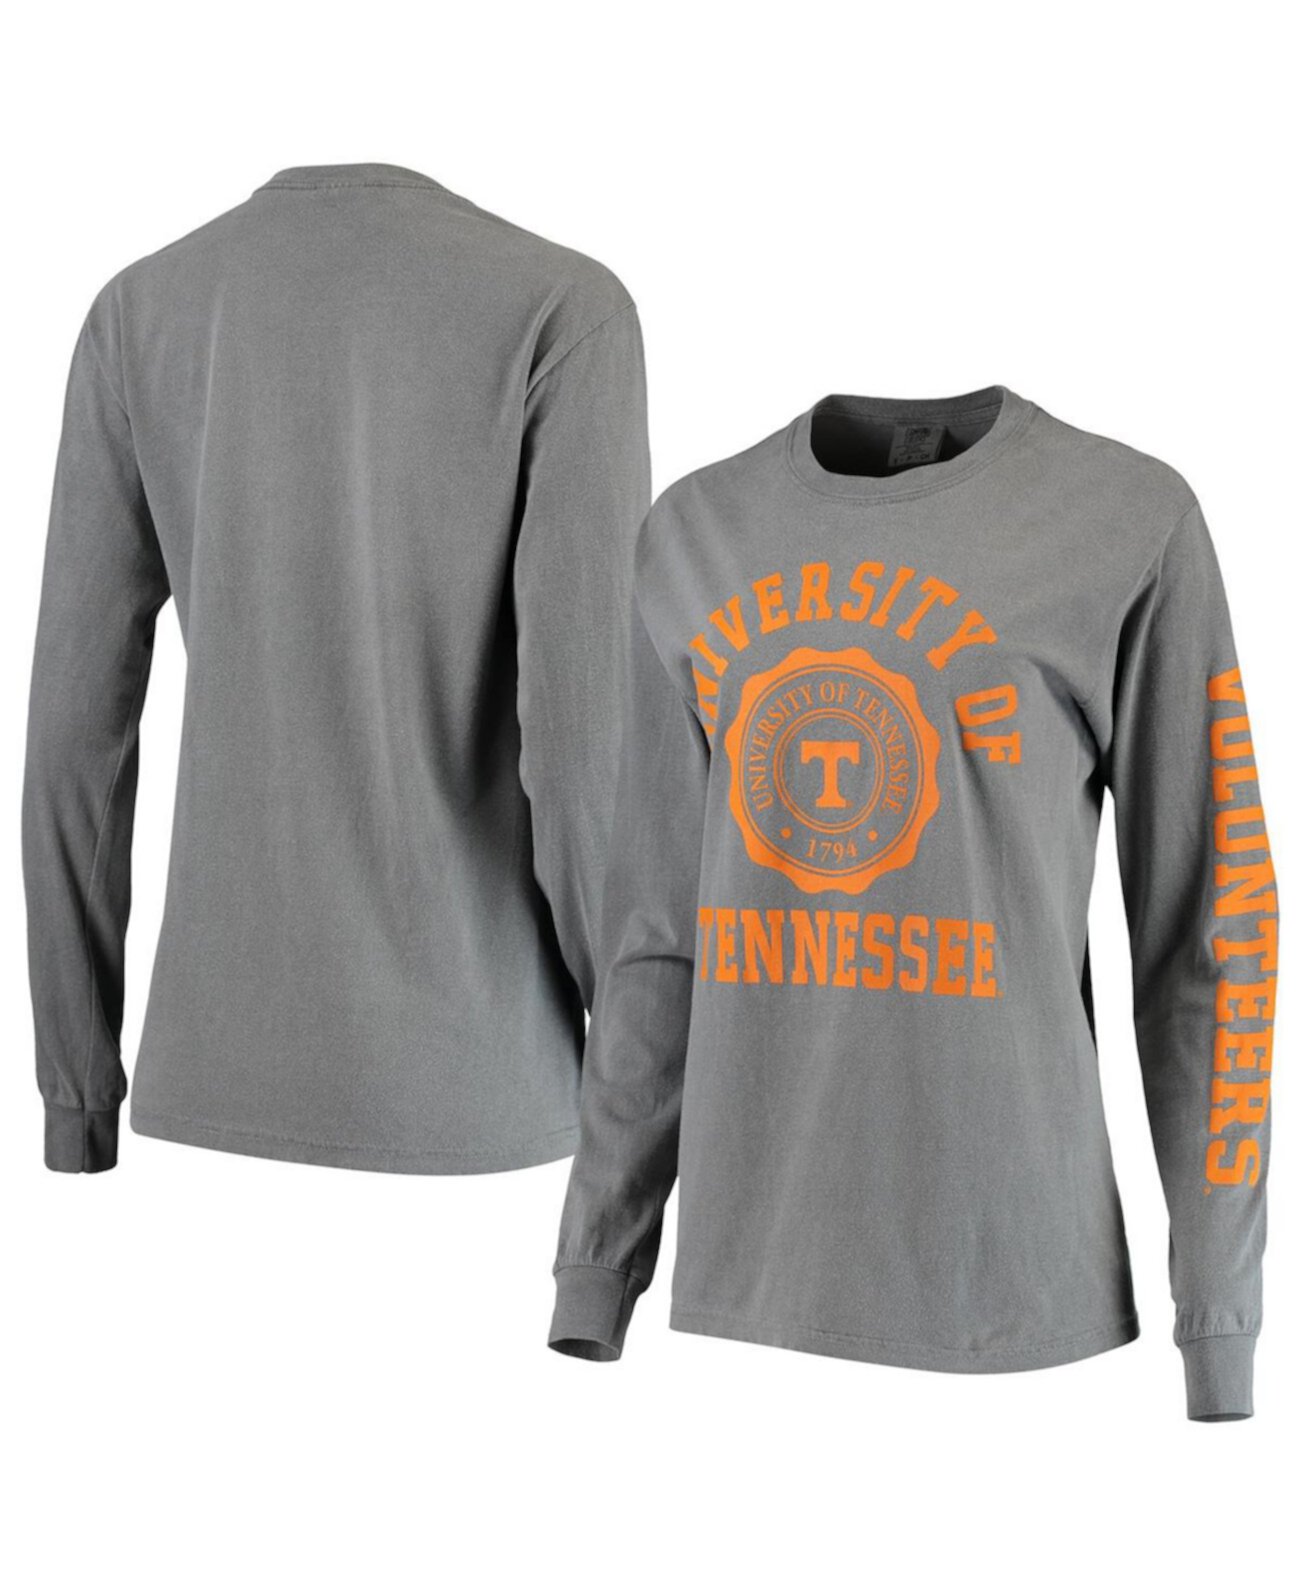 Женская серая футболка большого размера с длинным рукавом с печатью университета Tennessee Volunteers Comfort Colours Summit Sportswear